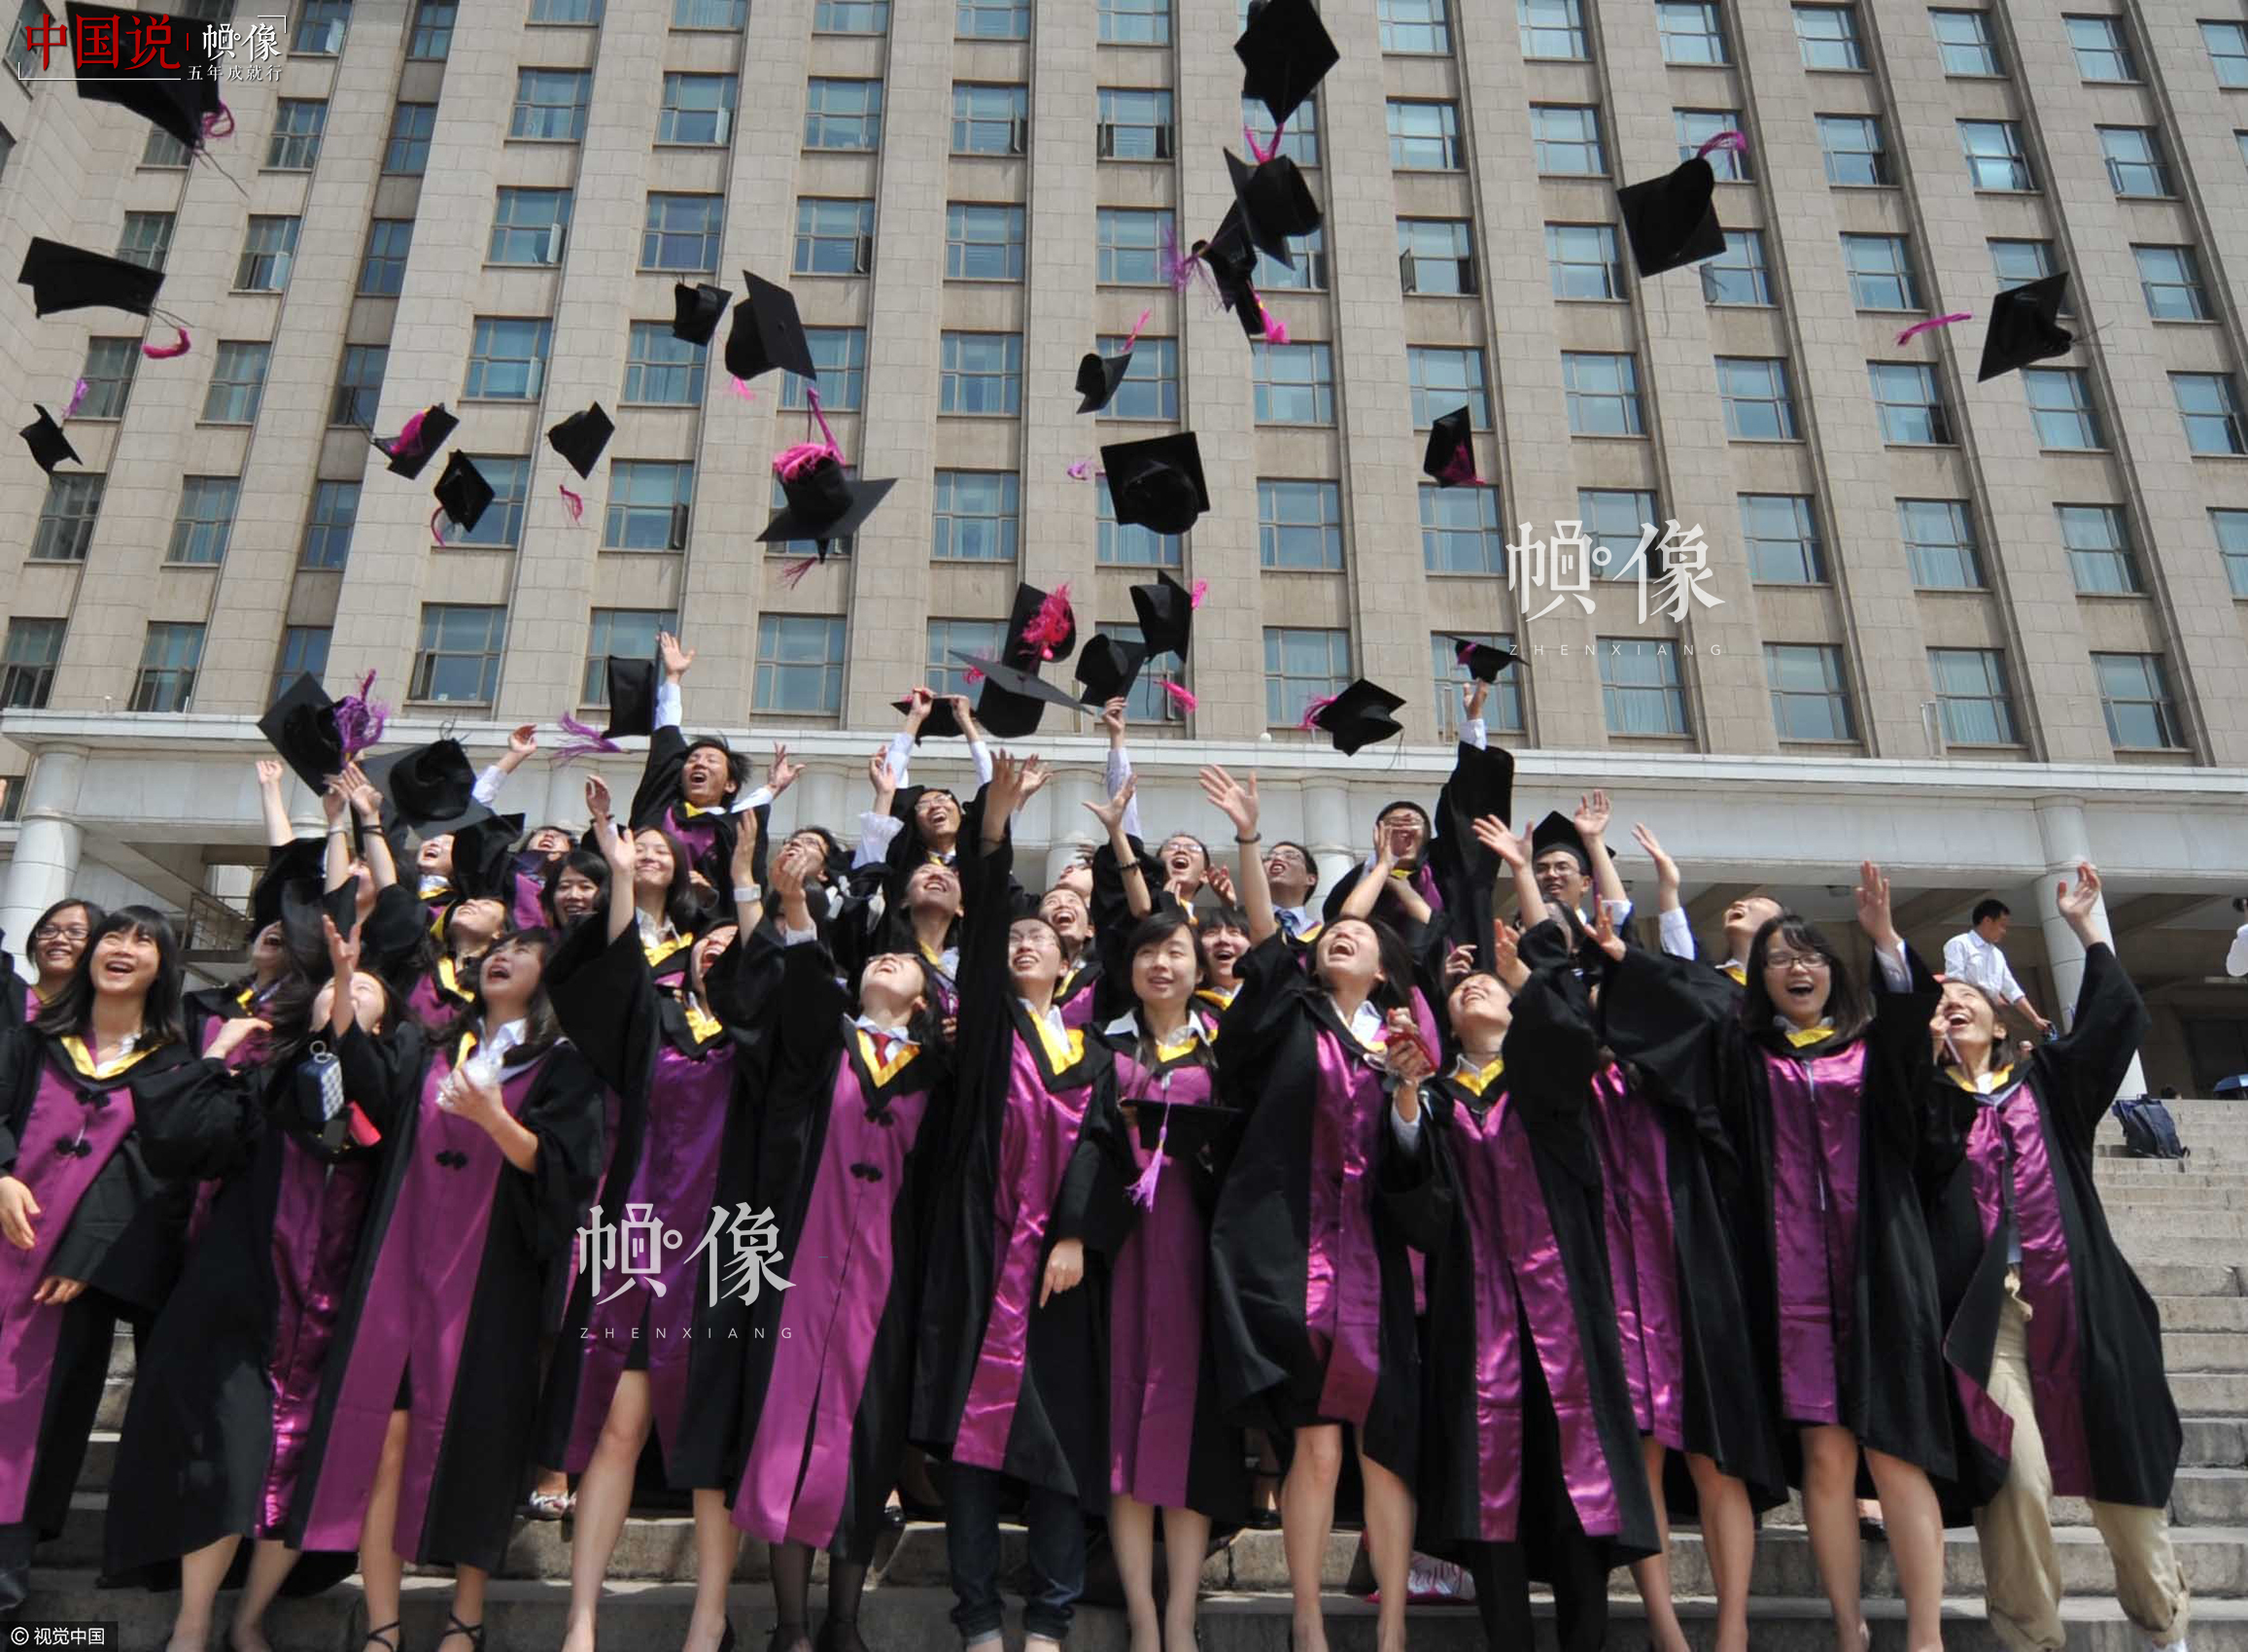 2011年6月27日，清華大學迎來畢業季，不少畢業學生即將離開母校，為留下珍貴的記憶，學生們爭相拍攝集體照。視覺中國供圖